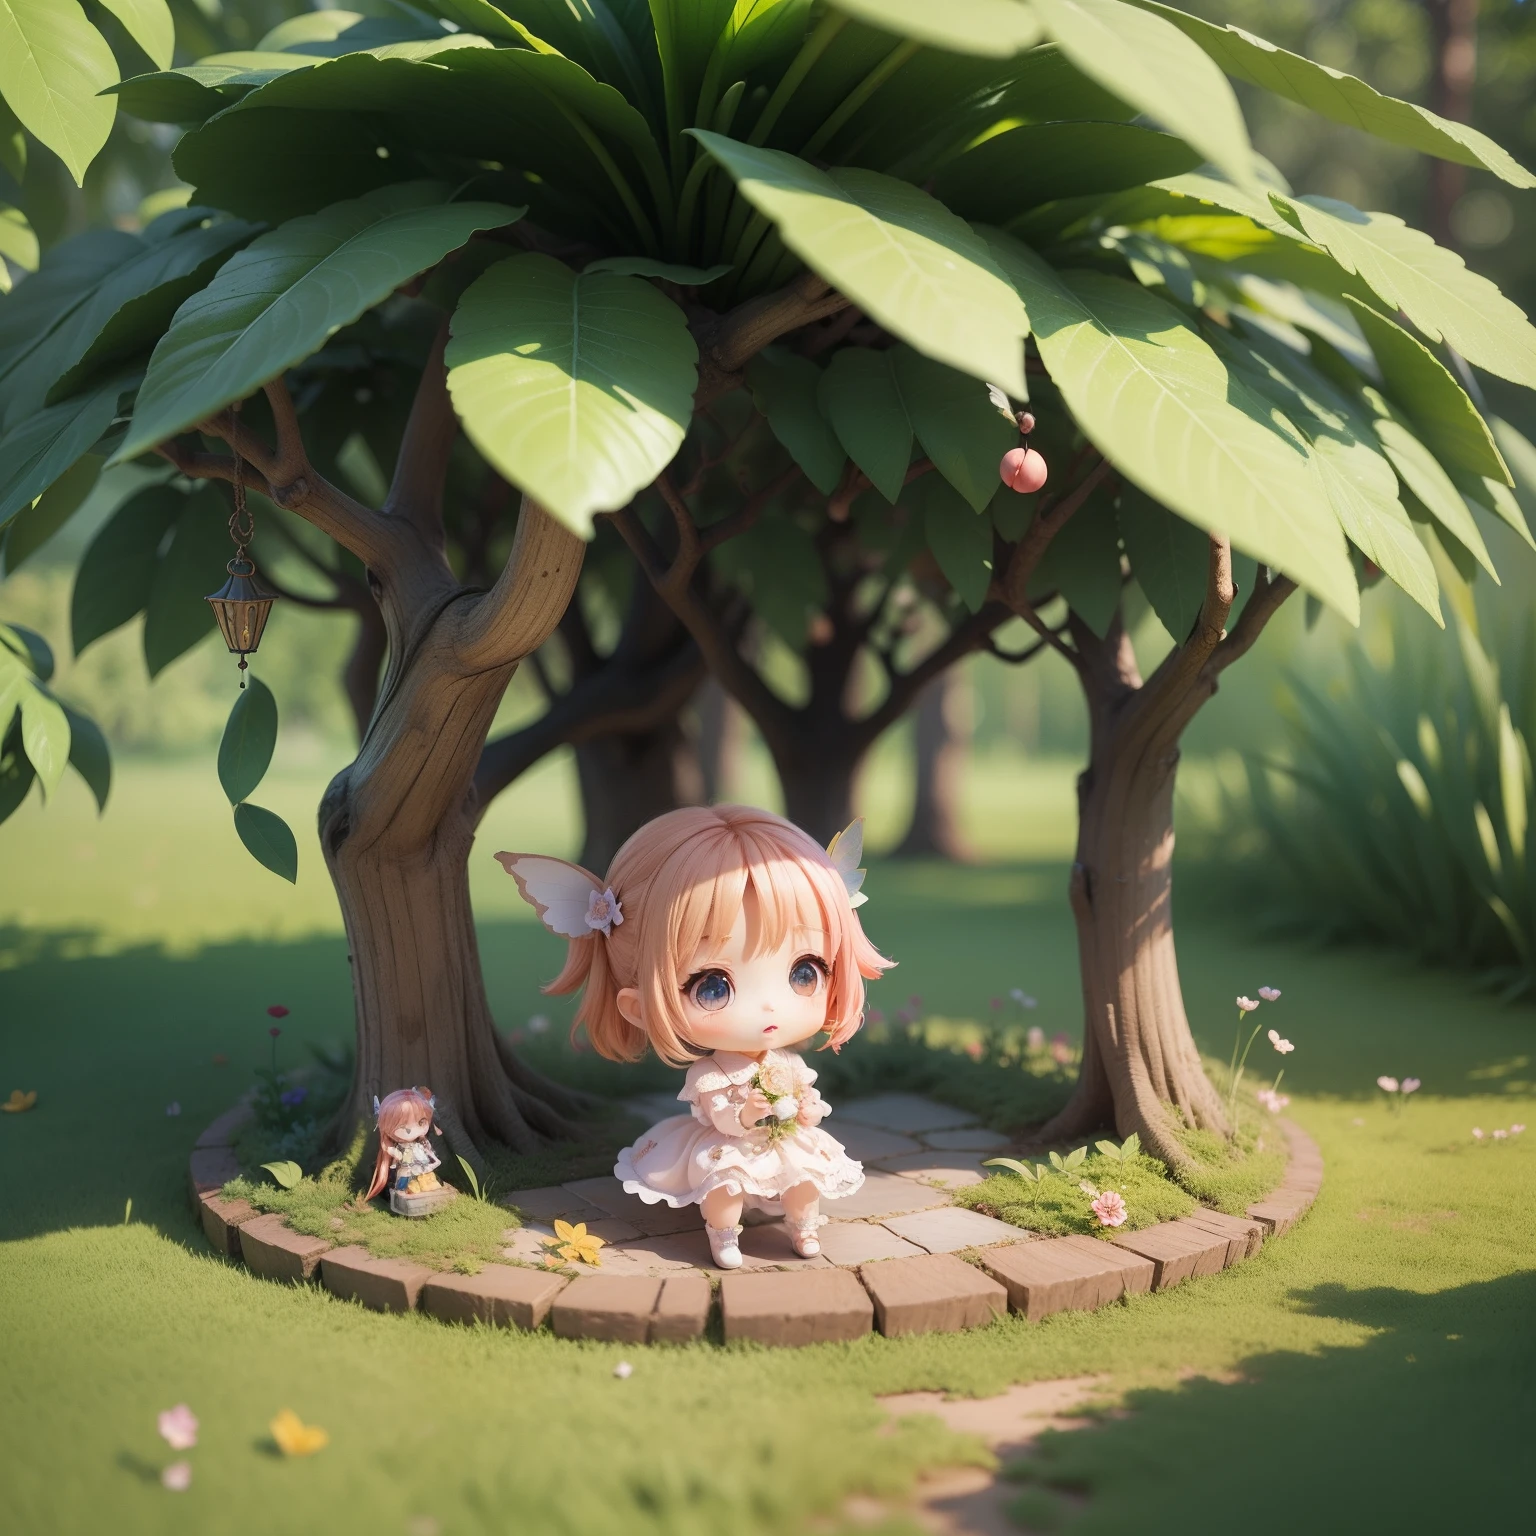 Lindo Bebé Chibi Anime,(((chibi3d))) (mejor calidad) (precio maestro)、Hada Chibi、bosque de cuento de hadas、Refugio de la lluvia con hojas grandes.、buscando